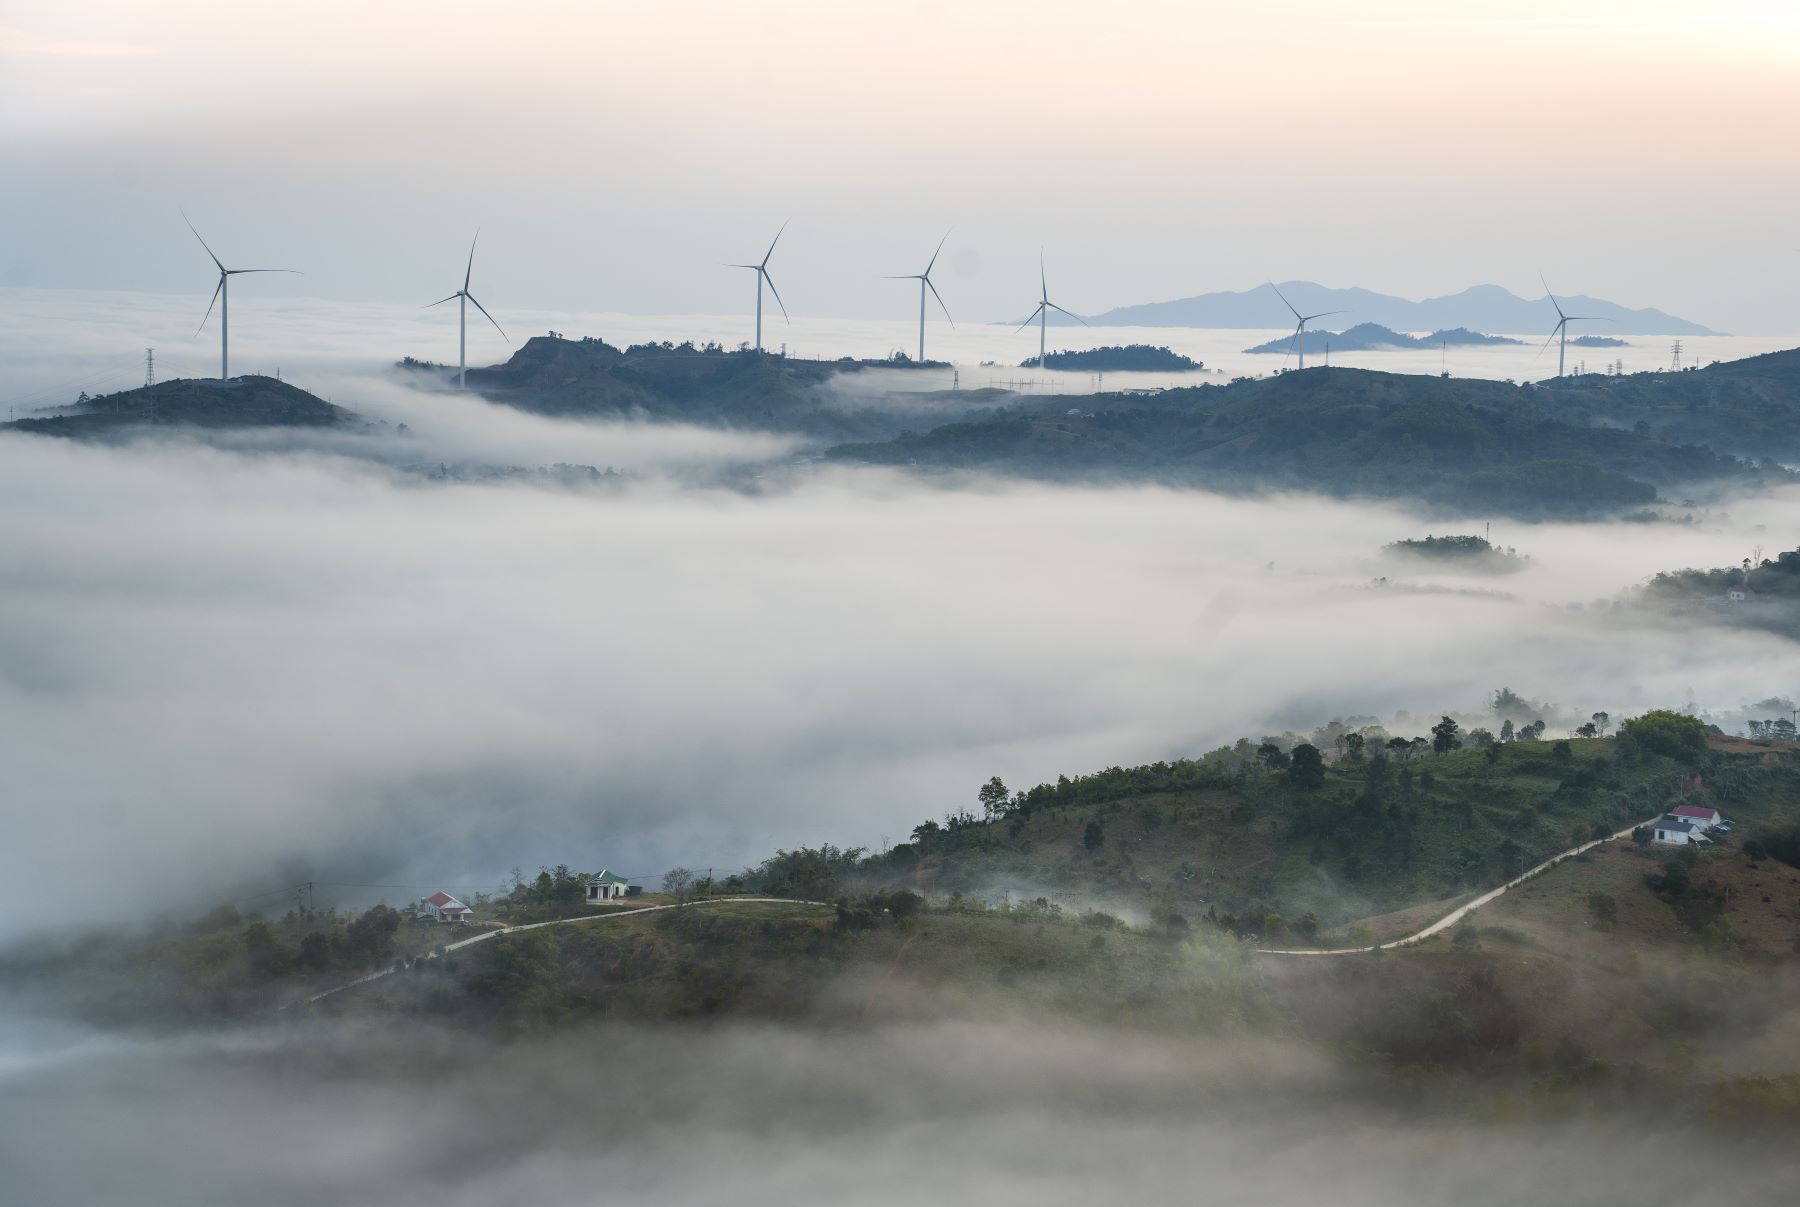 Tại huyện miền núi Hướng Hóa của tỉnh Quảng Trị, mấy năm trở lại xuất hiện cánh đồng điện gió ở các xã Hướng Linh, Hướng Tân, Hướng Phùng... Cùng với thiên nhiên, đã tạo nên cảnh sắc đẹp, đặc biệt là biển mây mỗi sáng sớm.